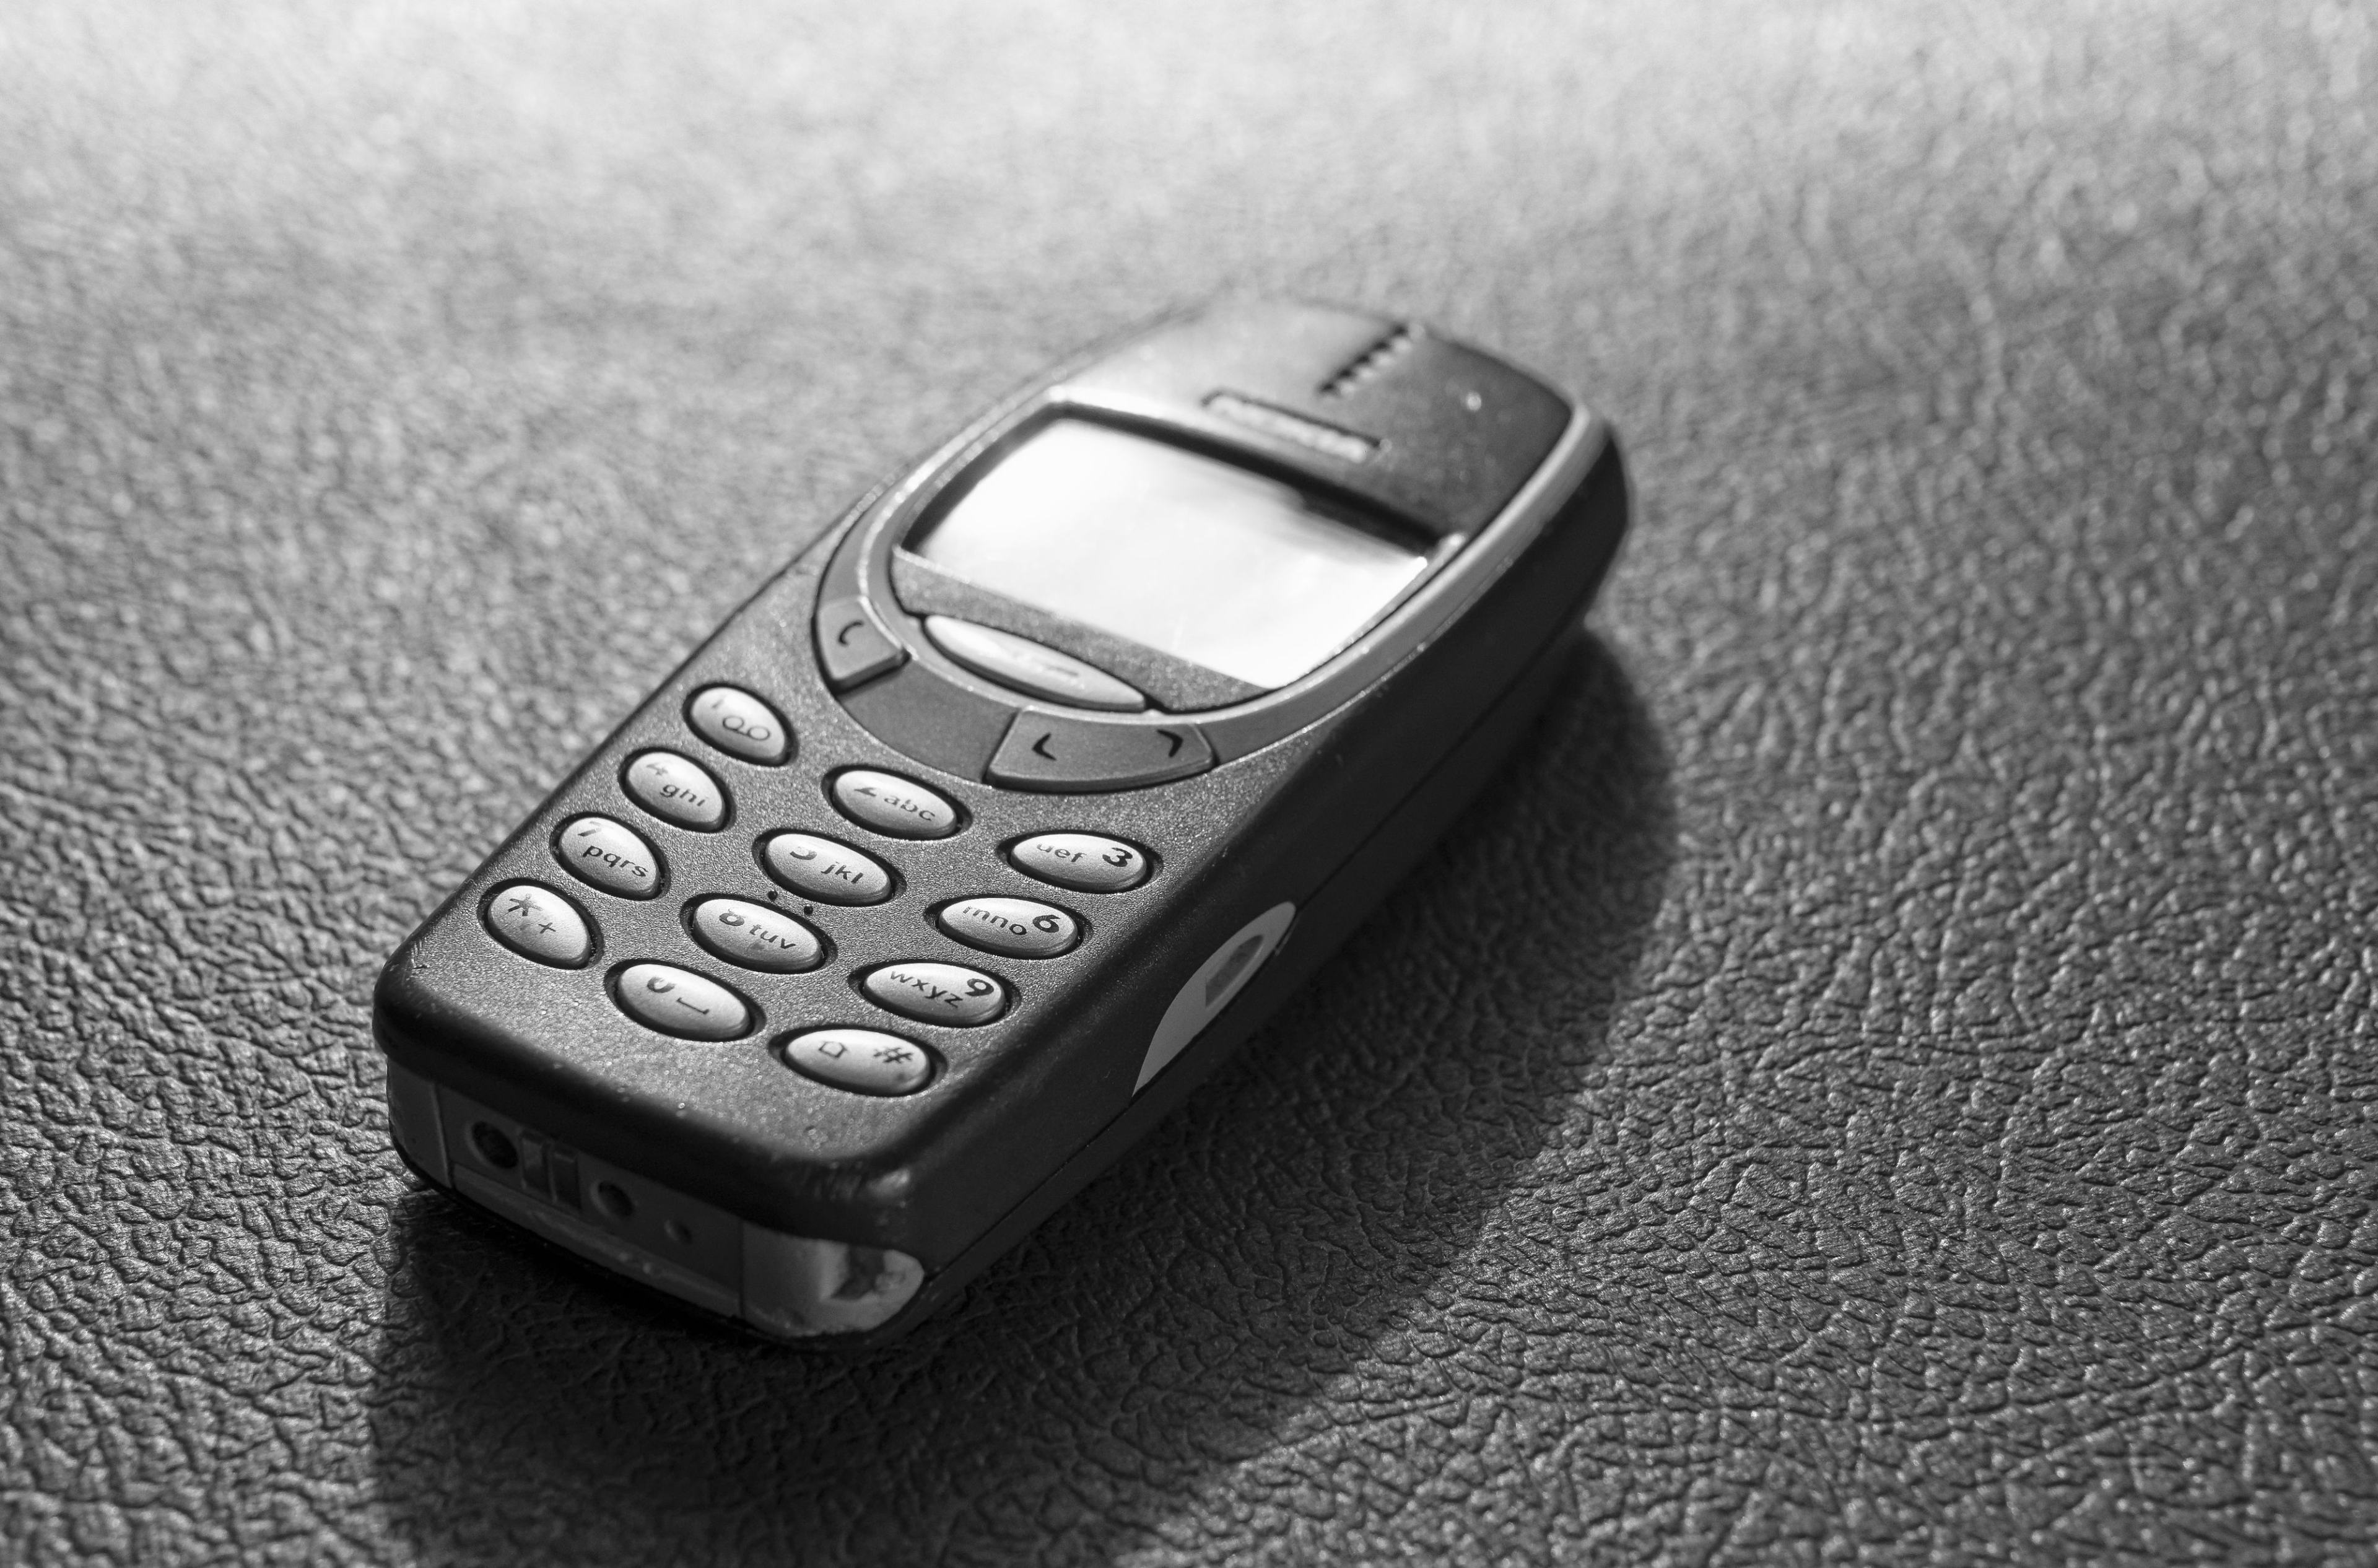 Politie zet Mark Rutte te kakken met 'nieuwe diensttelefoon': 'Lekker snake spelen'